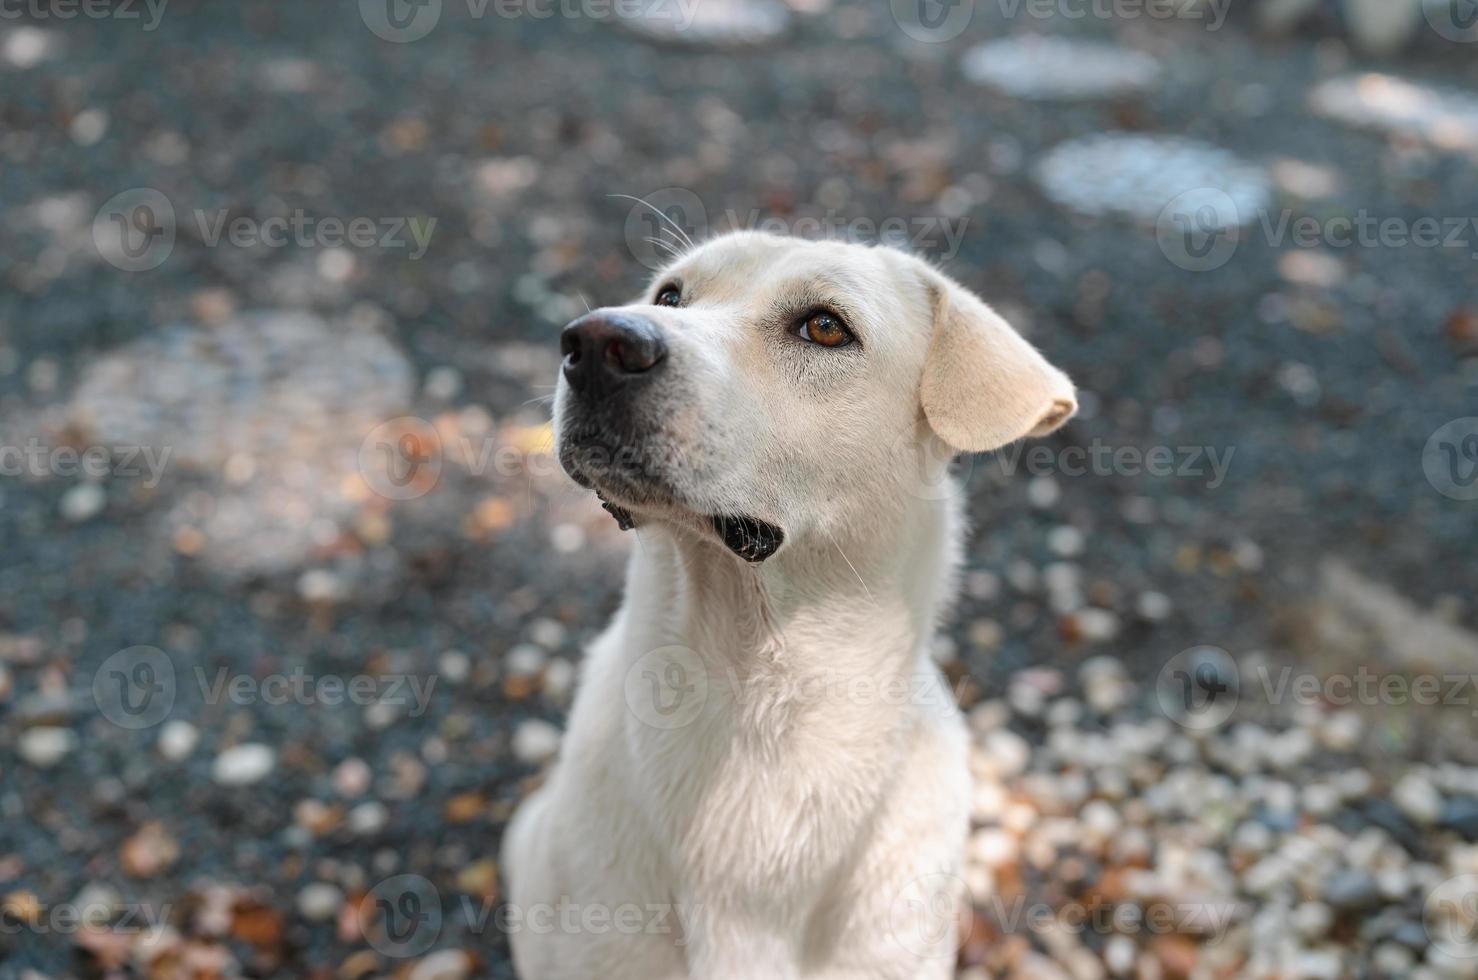 retrato de un lindo perro blanco hambriento pidiendo comida con un pequeño goteo en un jardín rocoso, una mascota amigable foto